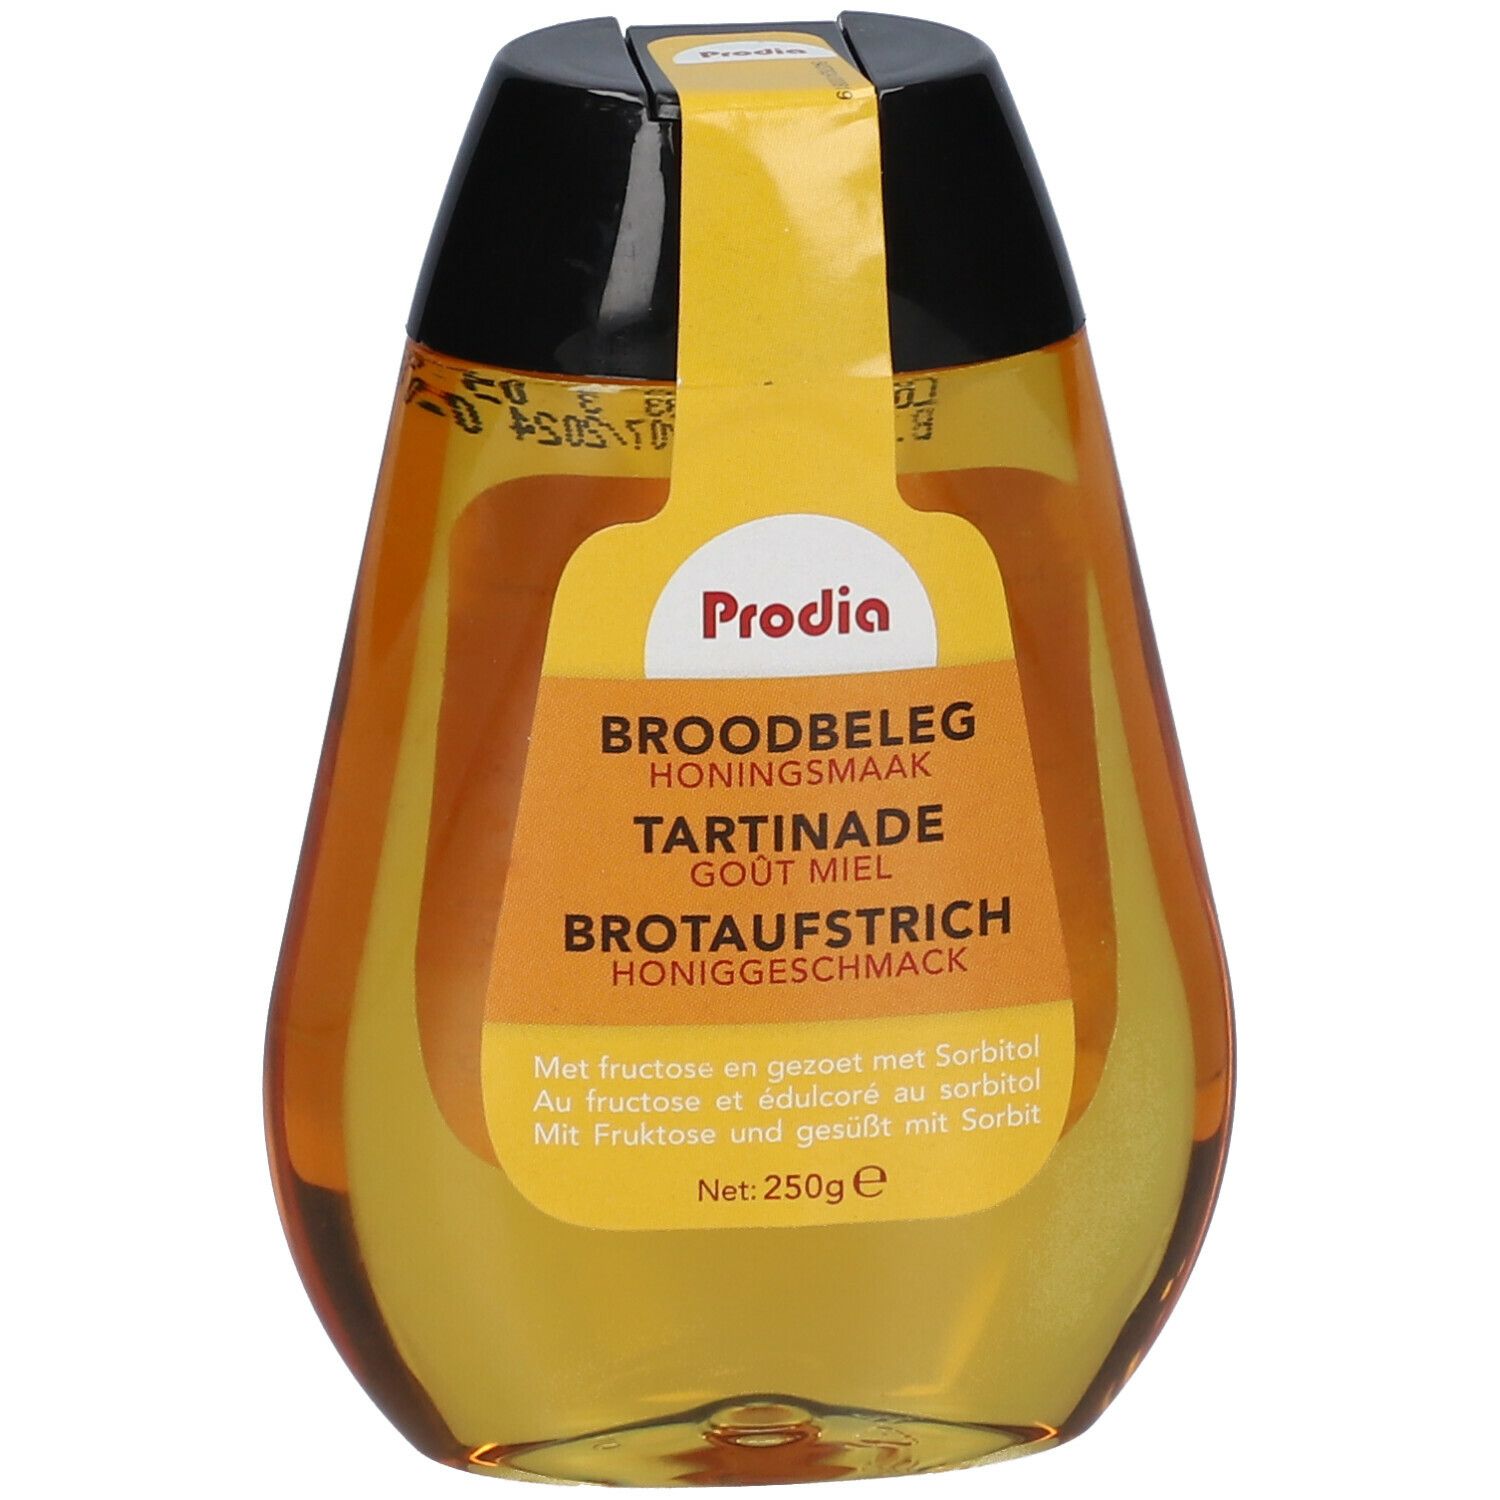 Prodia Brotaufstrich Honiggeschmack